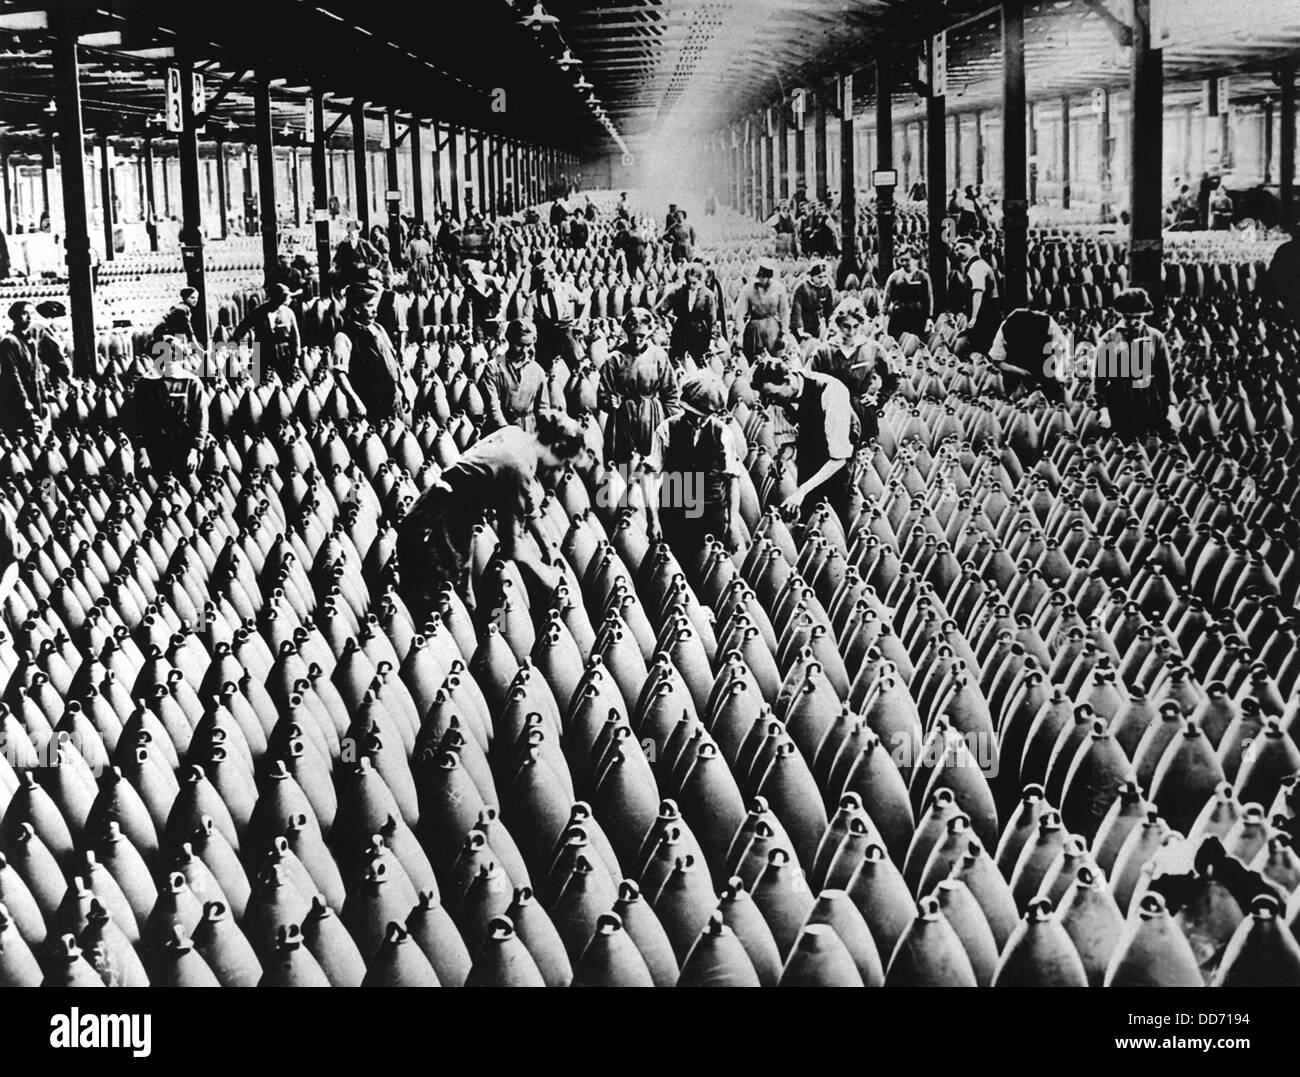 English les femmes et les hommes qui travaillent dans l'hangar de stockage pour de grandes coquilles d'une fabrique de munitions. A l'artillerie la plus meurtrière des armes nucléaires Banque D'Images